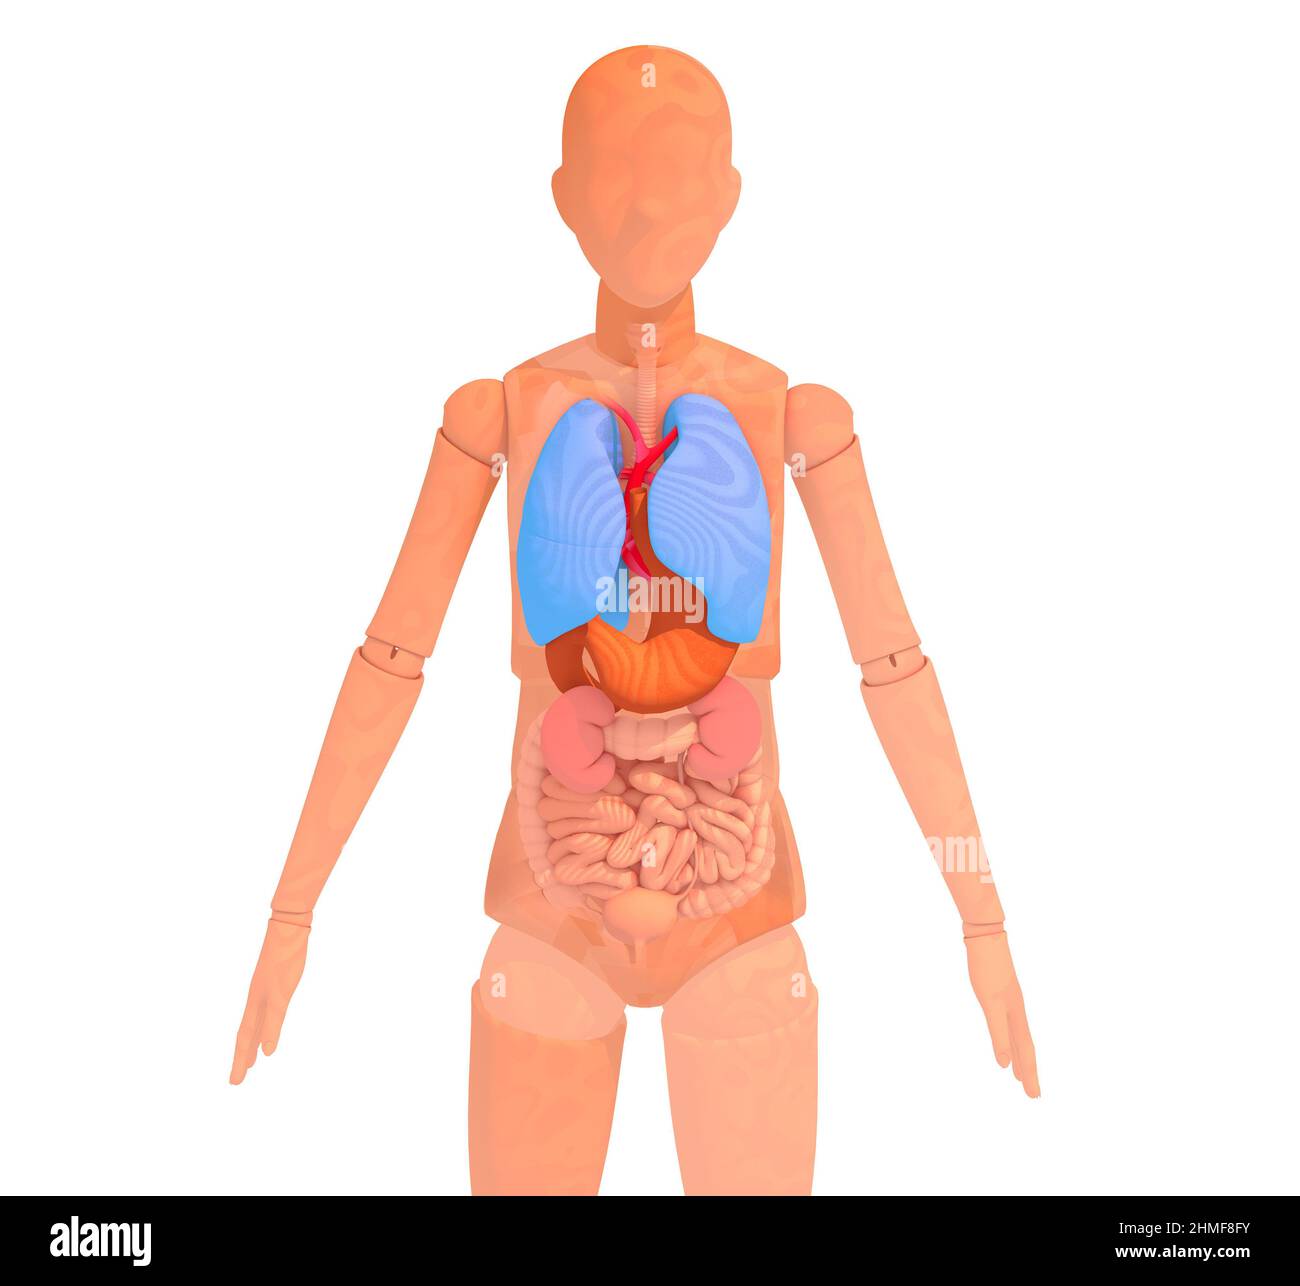 3d illustration du mannequin en bois articulé montrant l'intérieur. Organes vitaux anatomiques, image rognée sur fond blanc. Banque D'Images